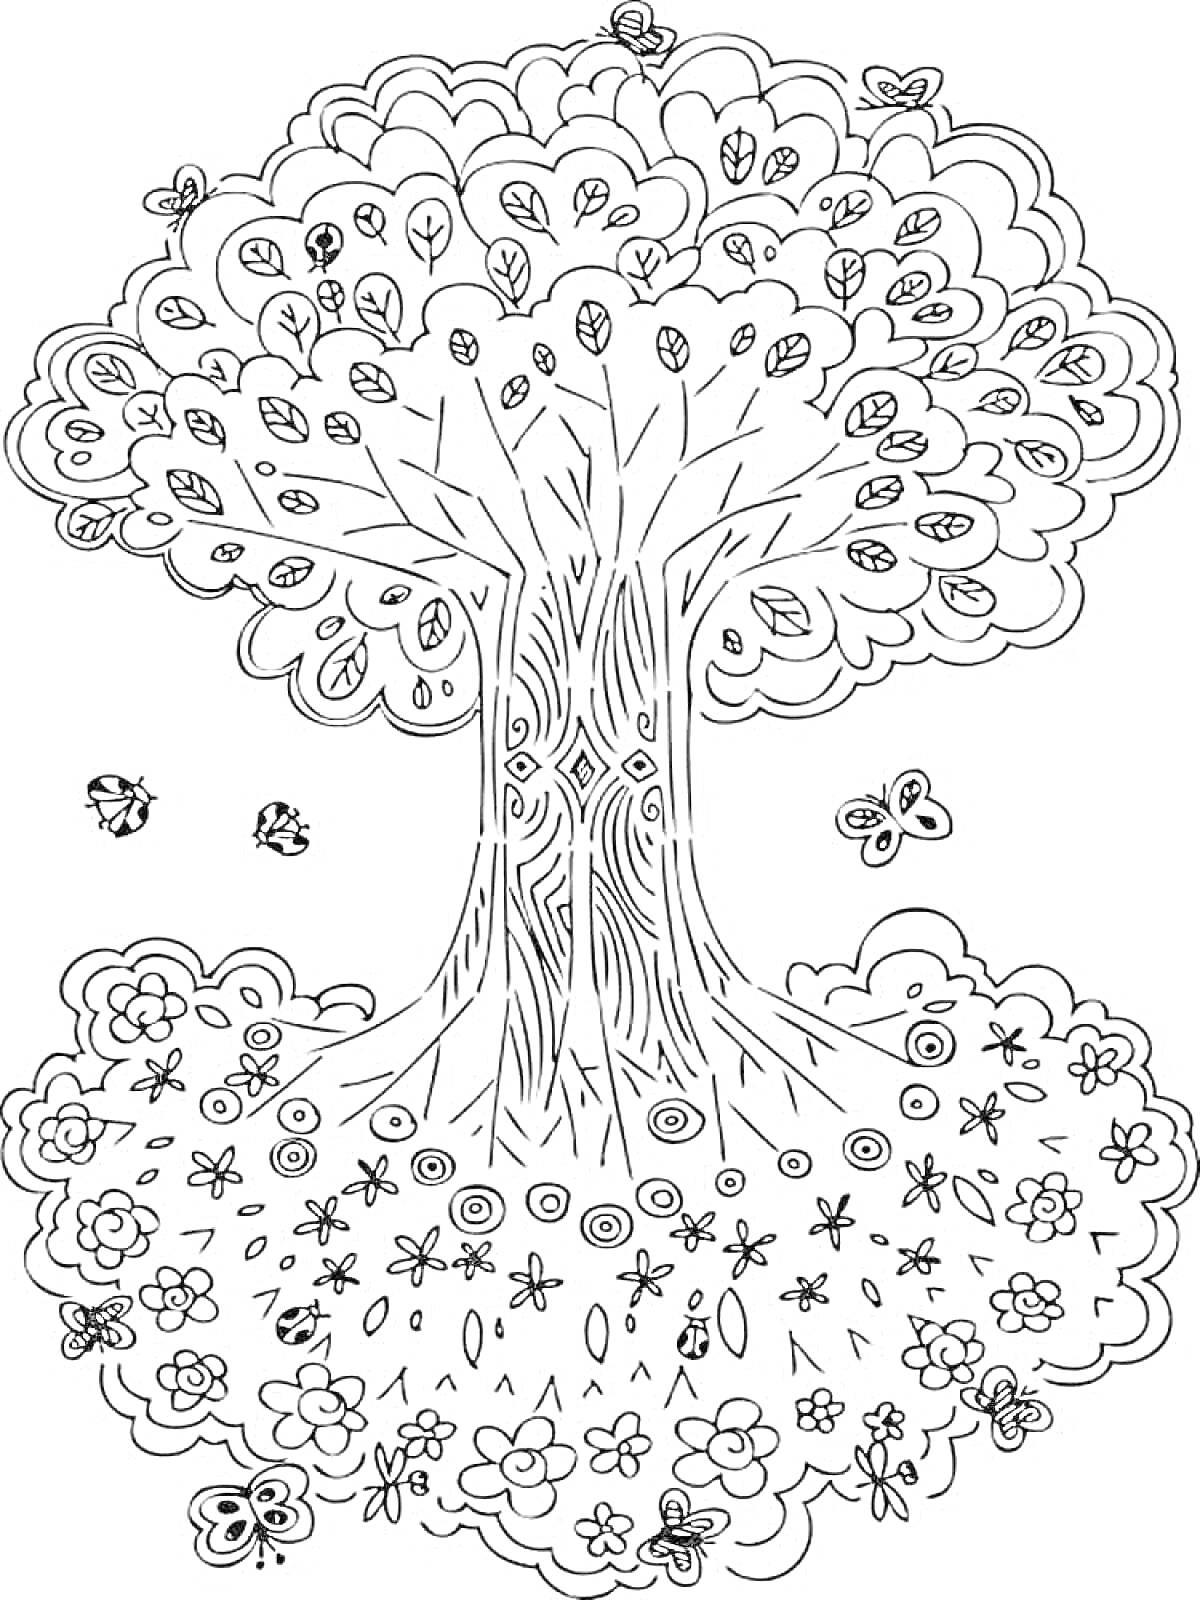 Раскраска Дерево жизни с цветами и бабочками